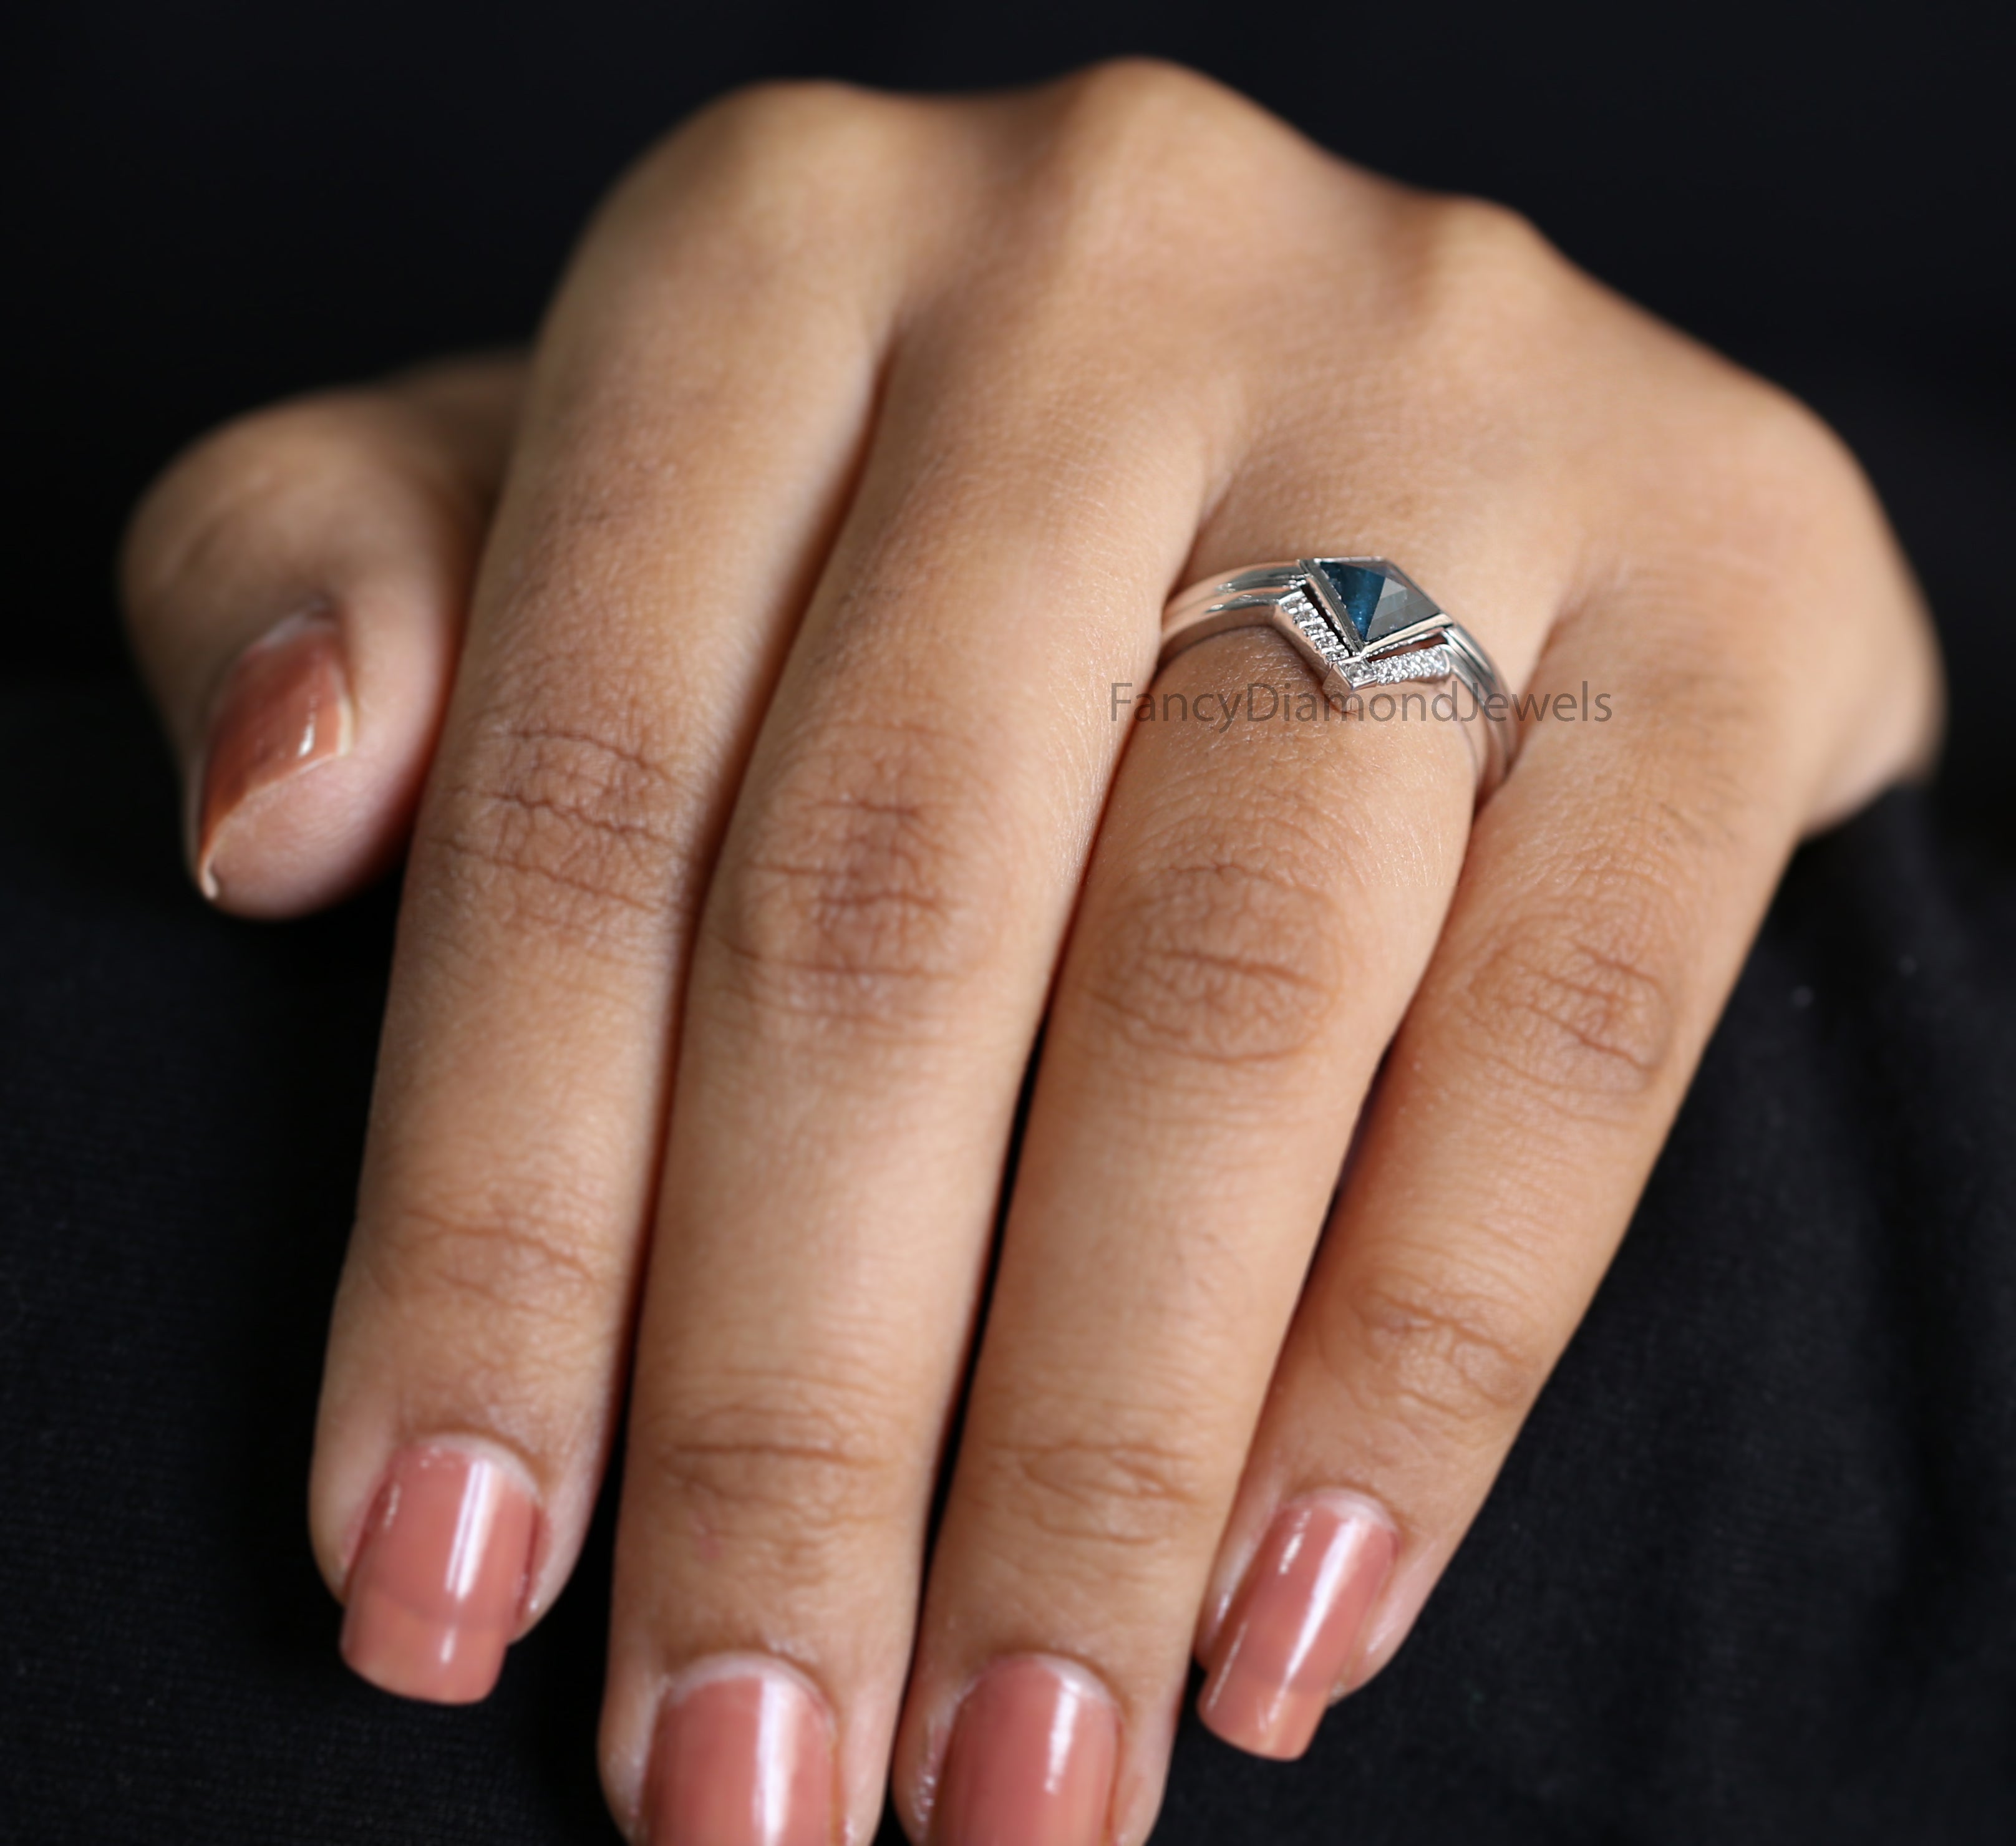 Kite Blue Color Diamond Ring, Blue Color Kite Diamond Engagement Ring, Kite Diamond Ring, Kite Shape Ring, Kite Bridal Ring Set KD1111